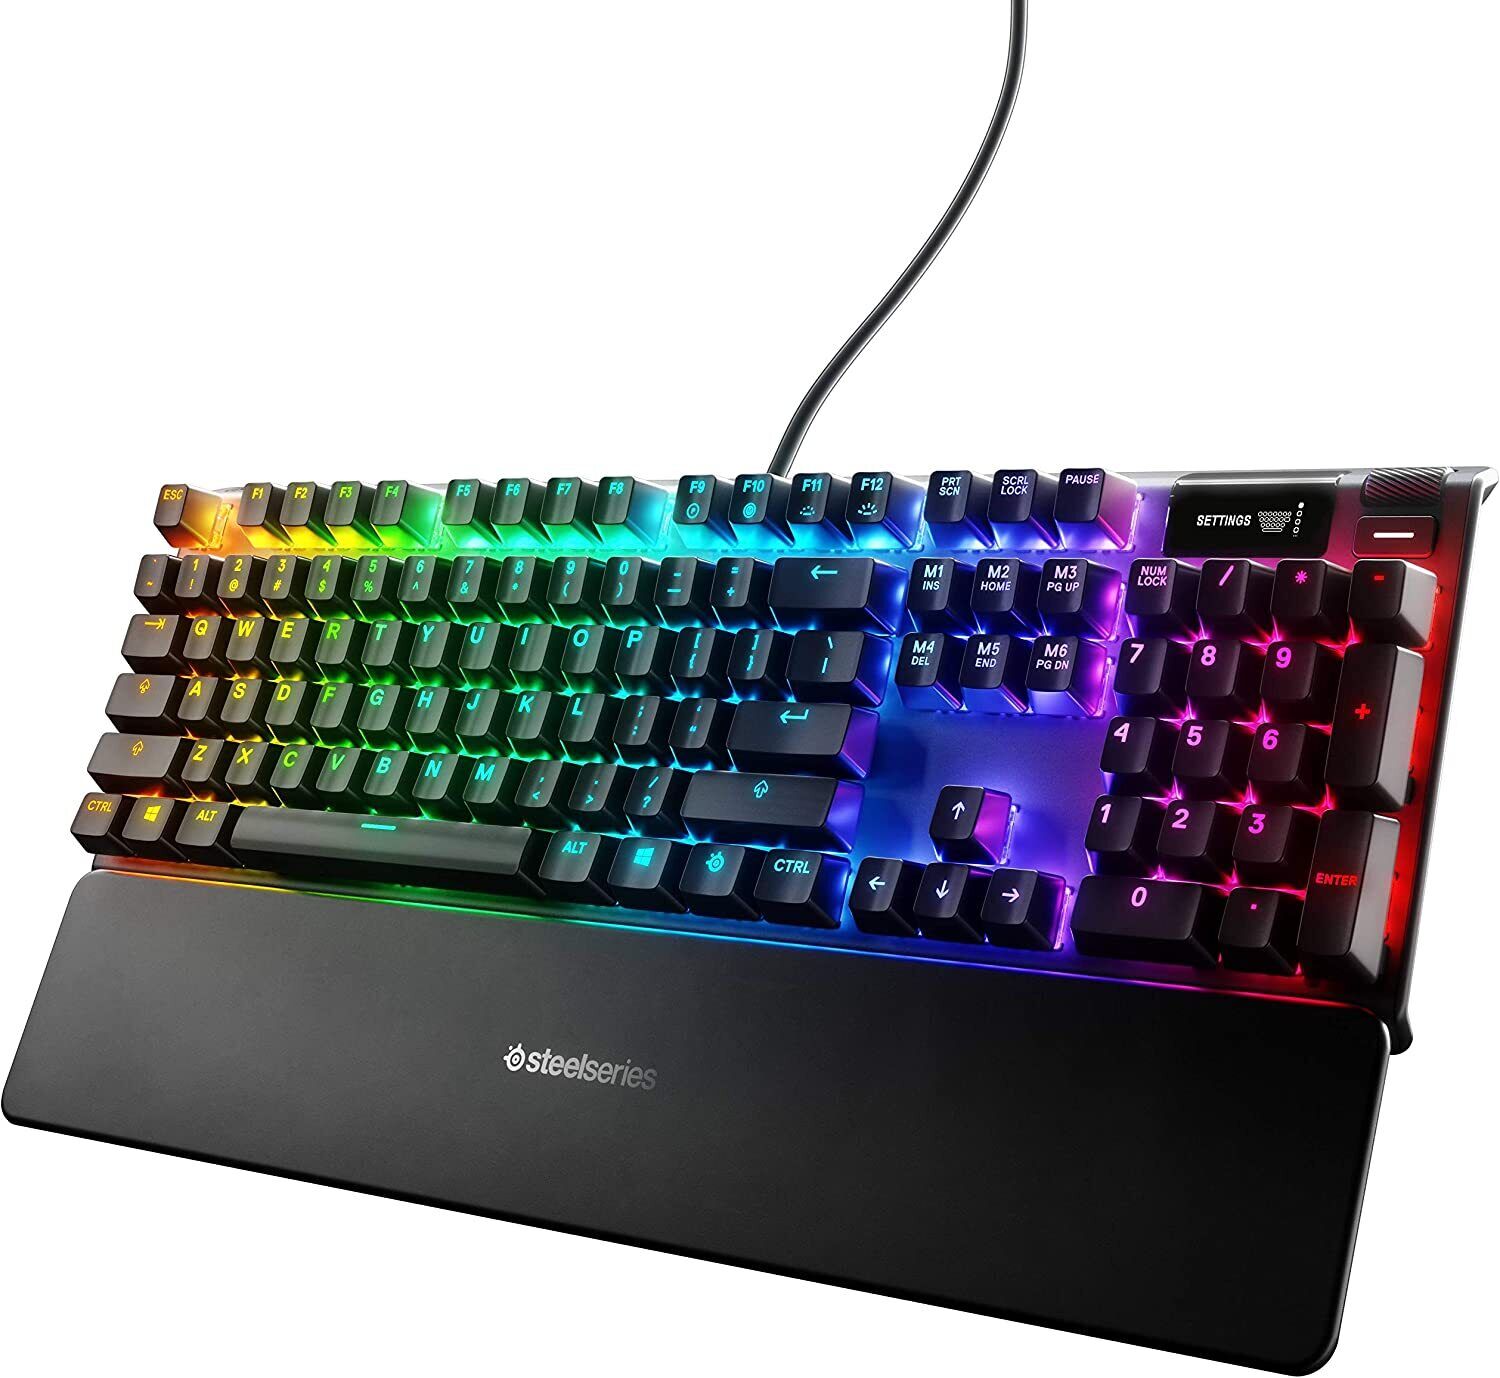 SteelSeries Apex Pro Gaming Keyboard Smart Display Certified Refurbished